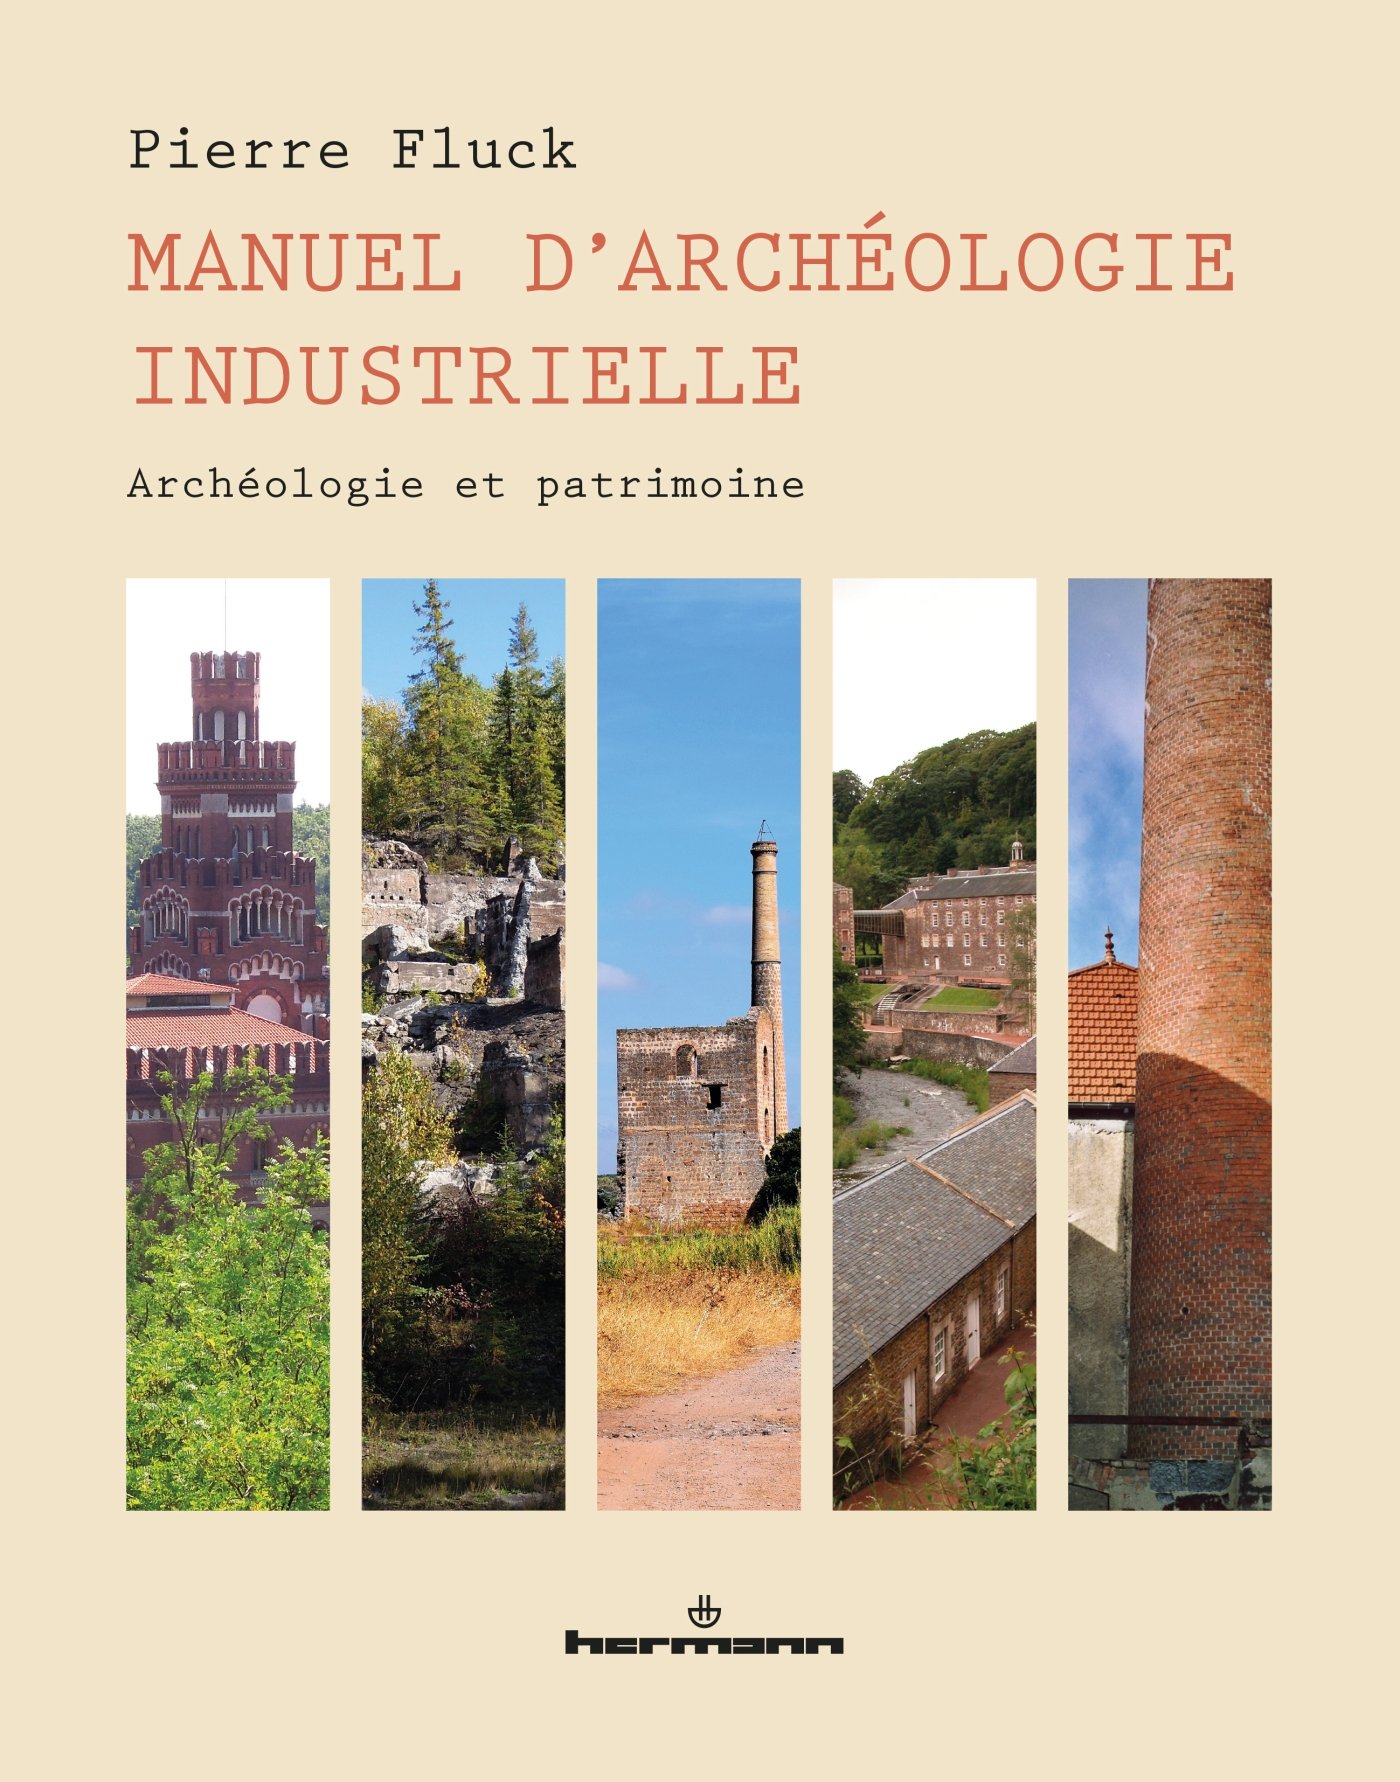 ÉPUISÉ - Manuel d'archéologie industrielle. Archéologie et patrimoine, 2017, 400 p.